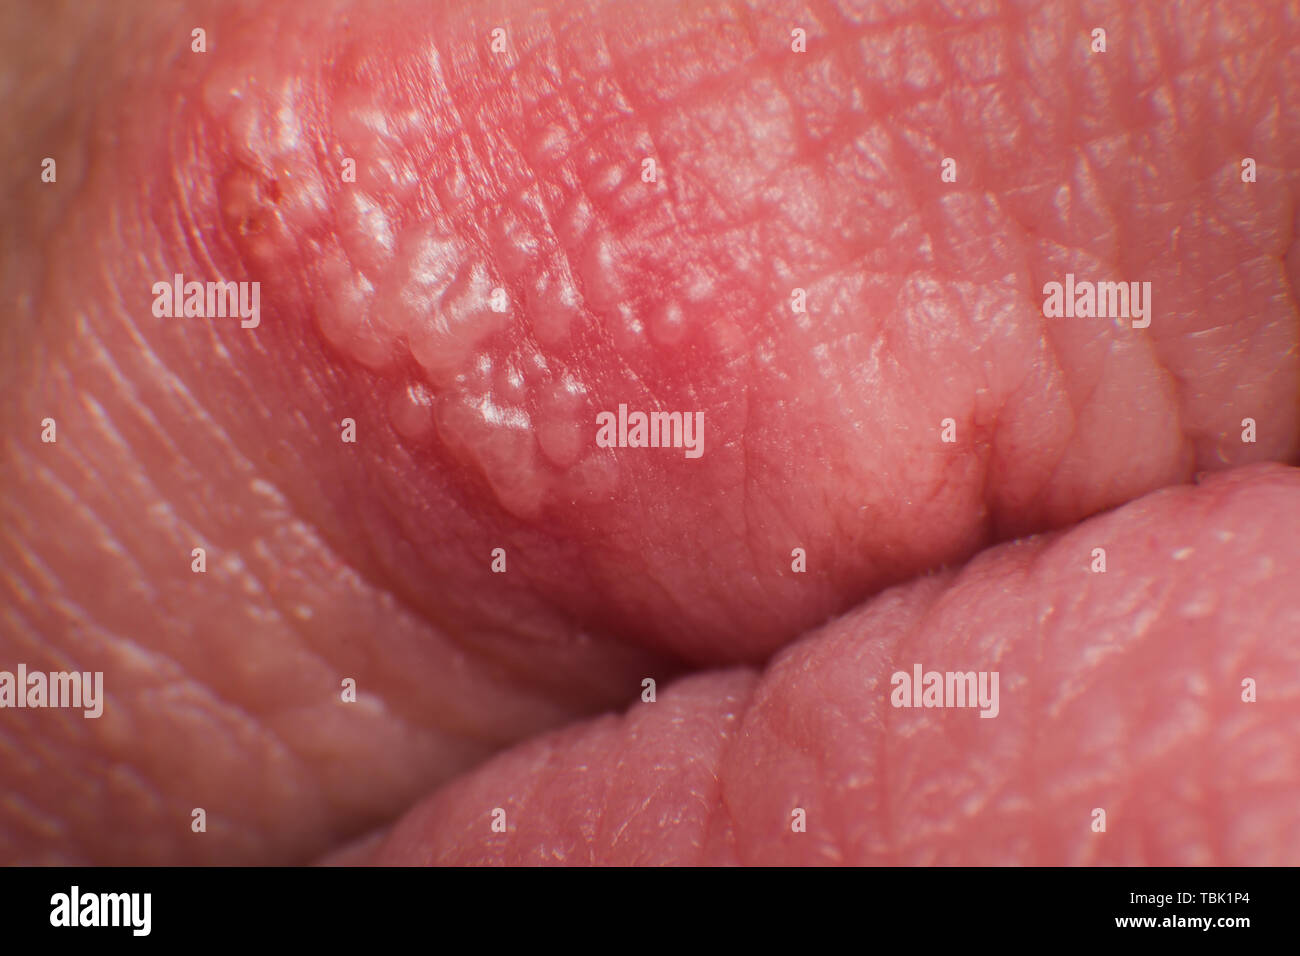 Mann herpes bilder genitalis Herpes genitalis: